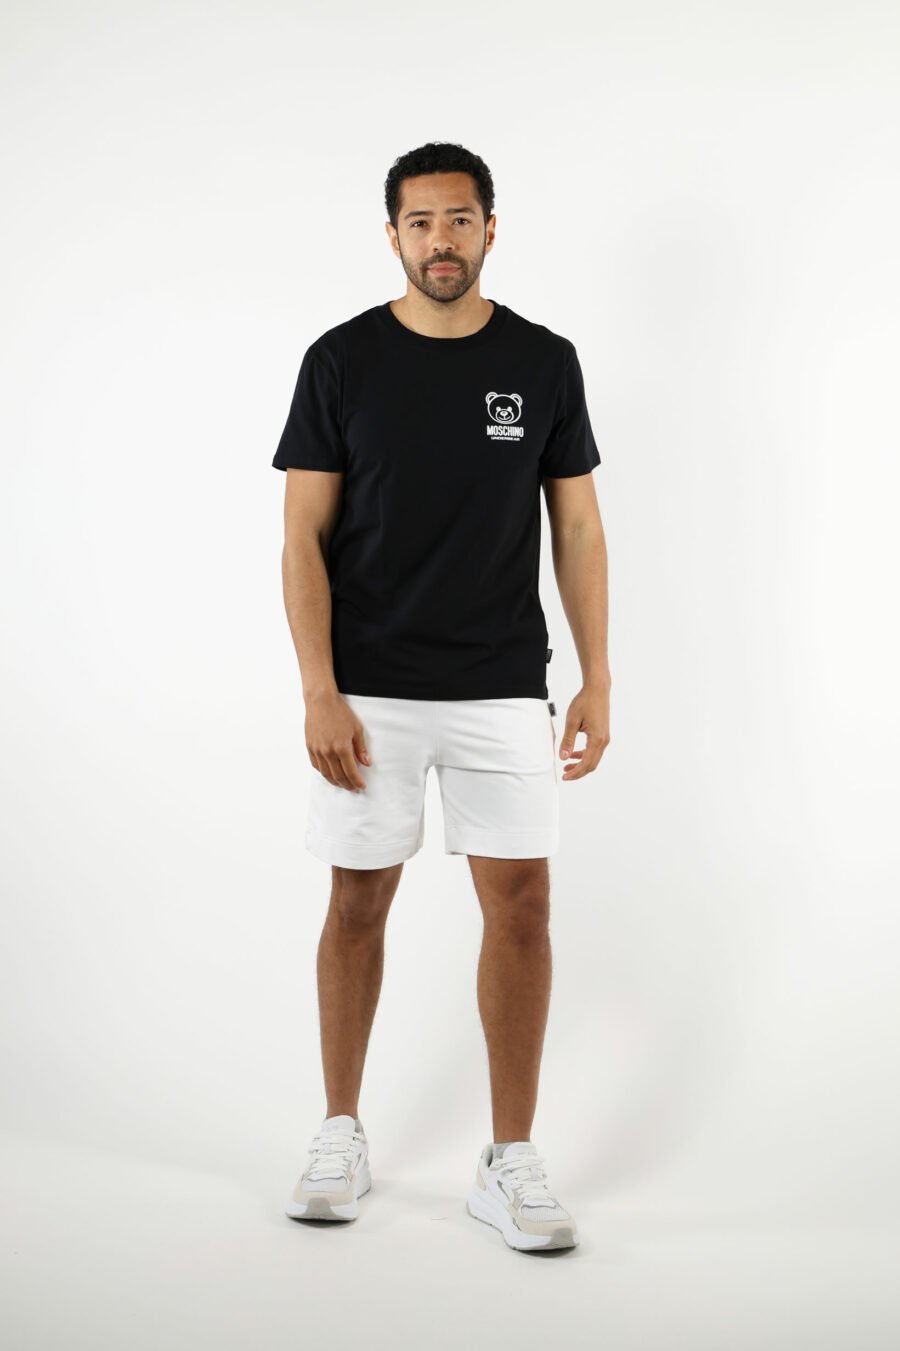 T-shirt schwarz mit Mini-Bär "underbear" in weißem Gummi - 111013